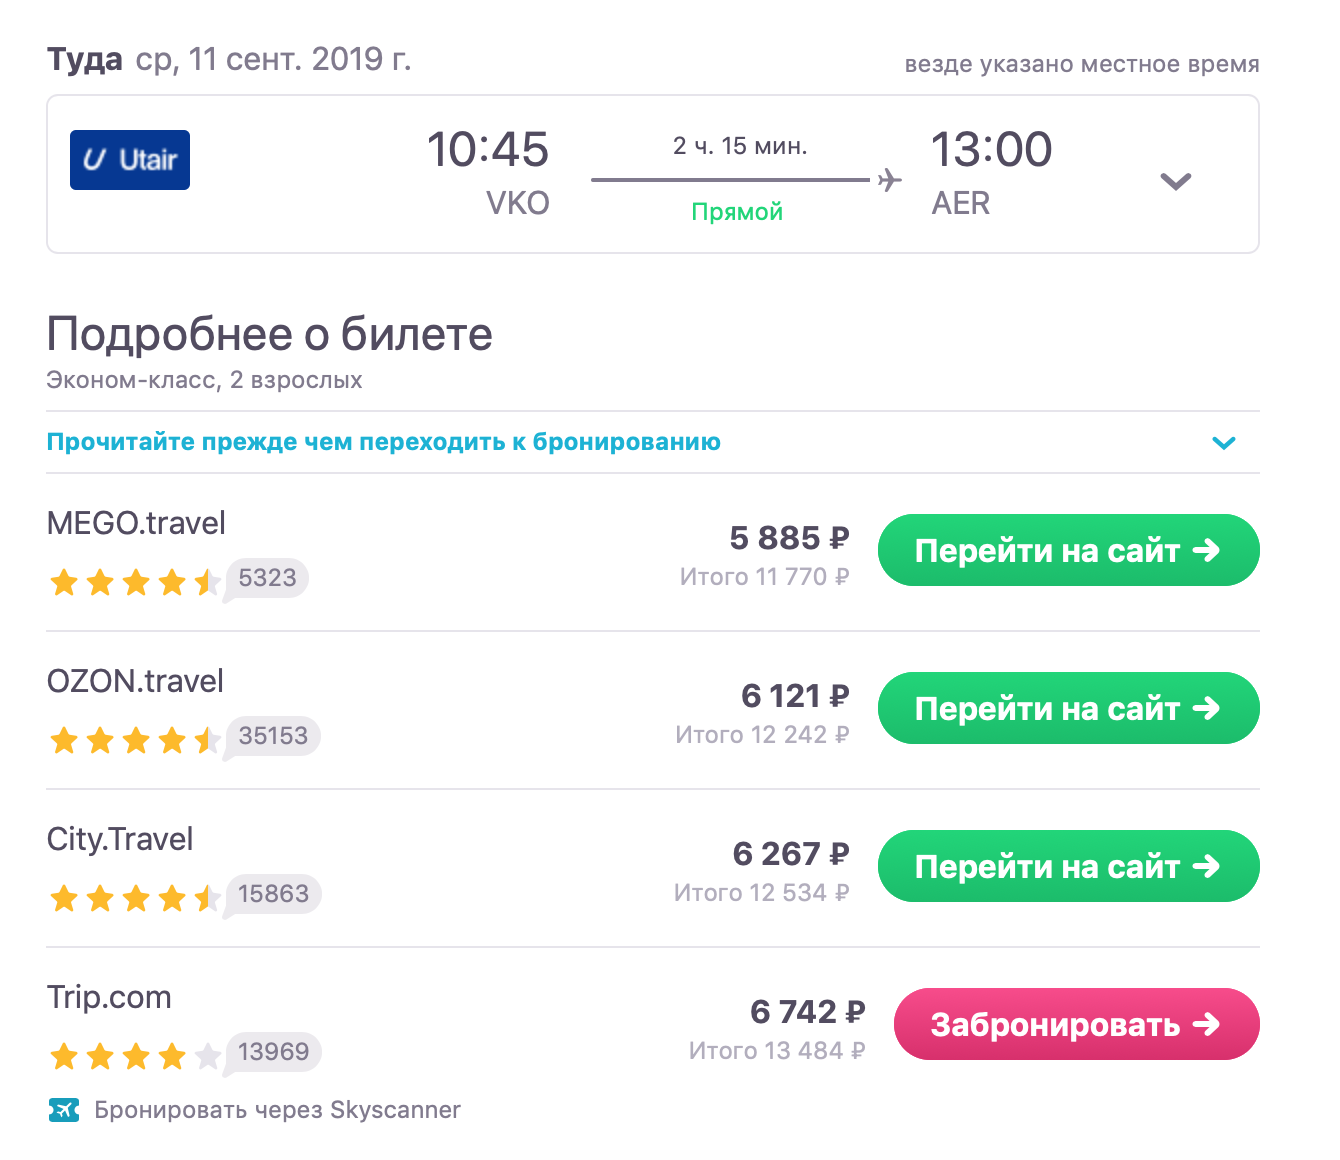 Билеты промо. Промо-рейс. Что такое цена промо на самолет. Megotravel ru